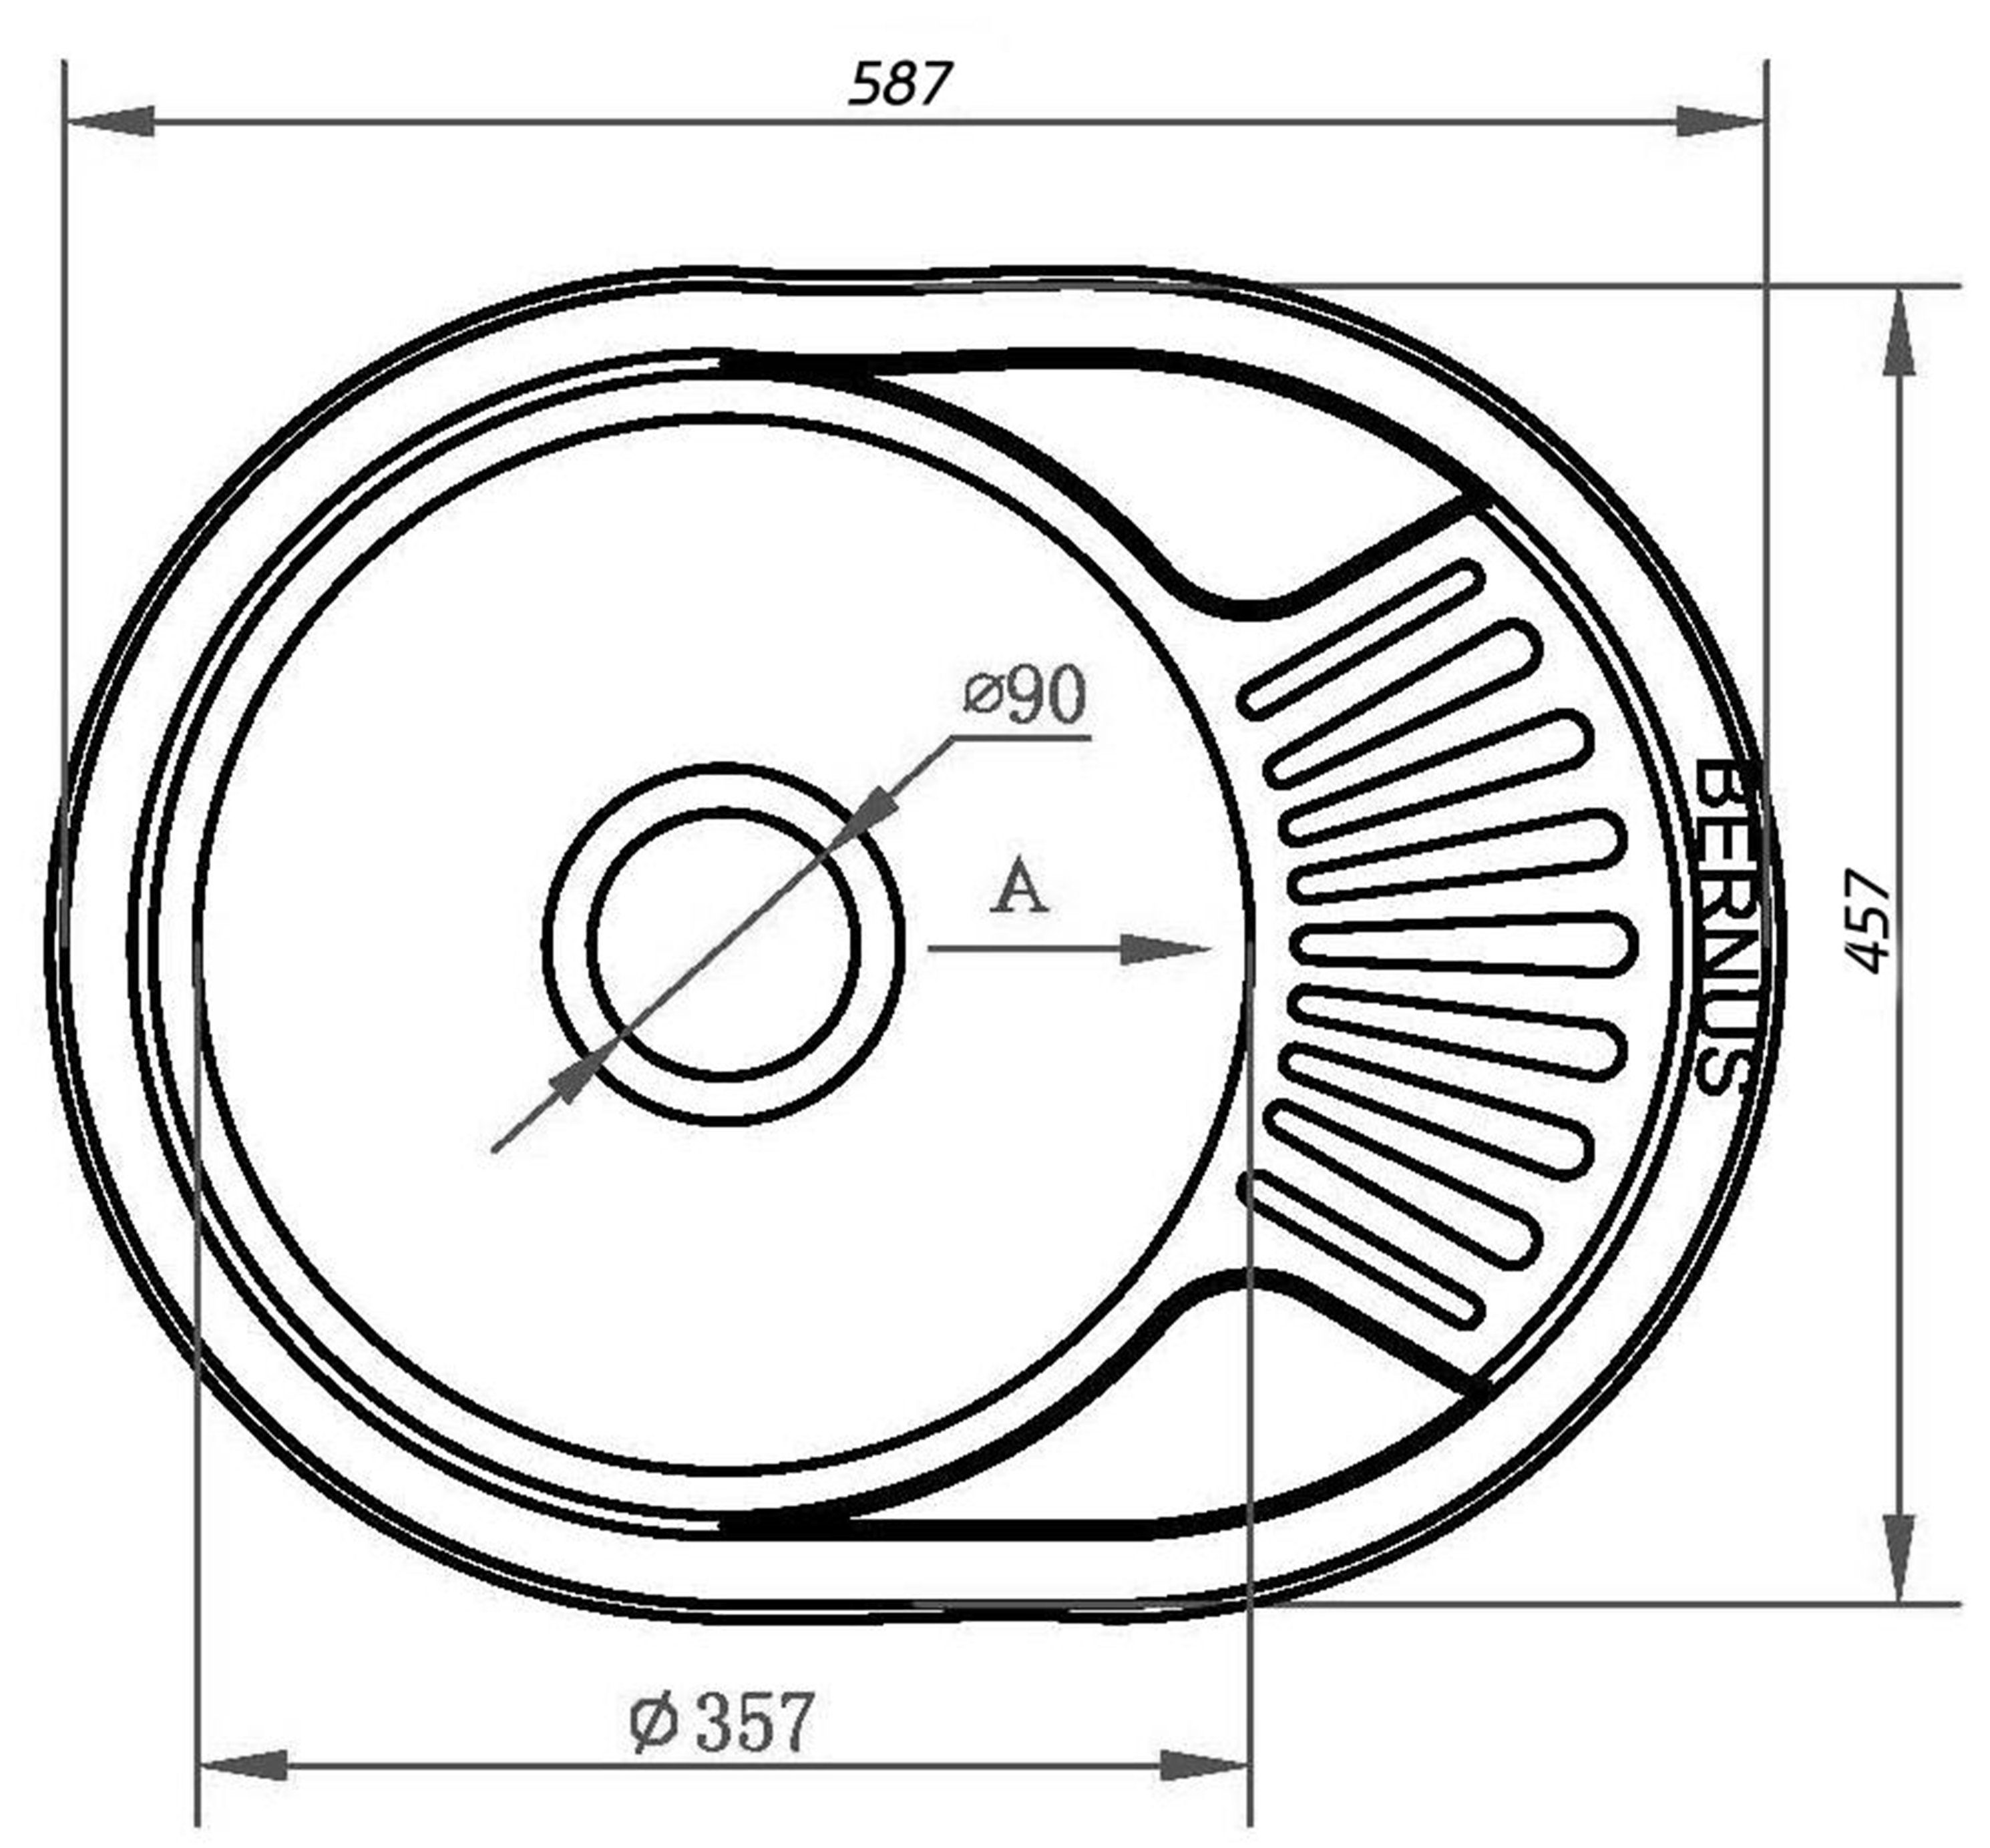 BERNUS Küchentechnik Edelstahlspüle BERNUS SMALL, 45 Einbau cm, Material wechselseitigen starkes zum 58.7/45.7 Oval, ARUNA Sehr geeignet 0,9mm